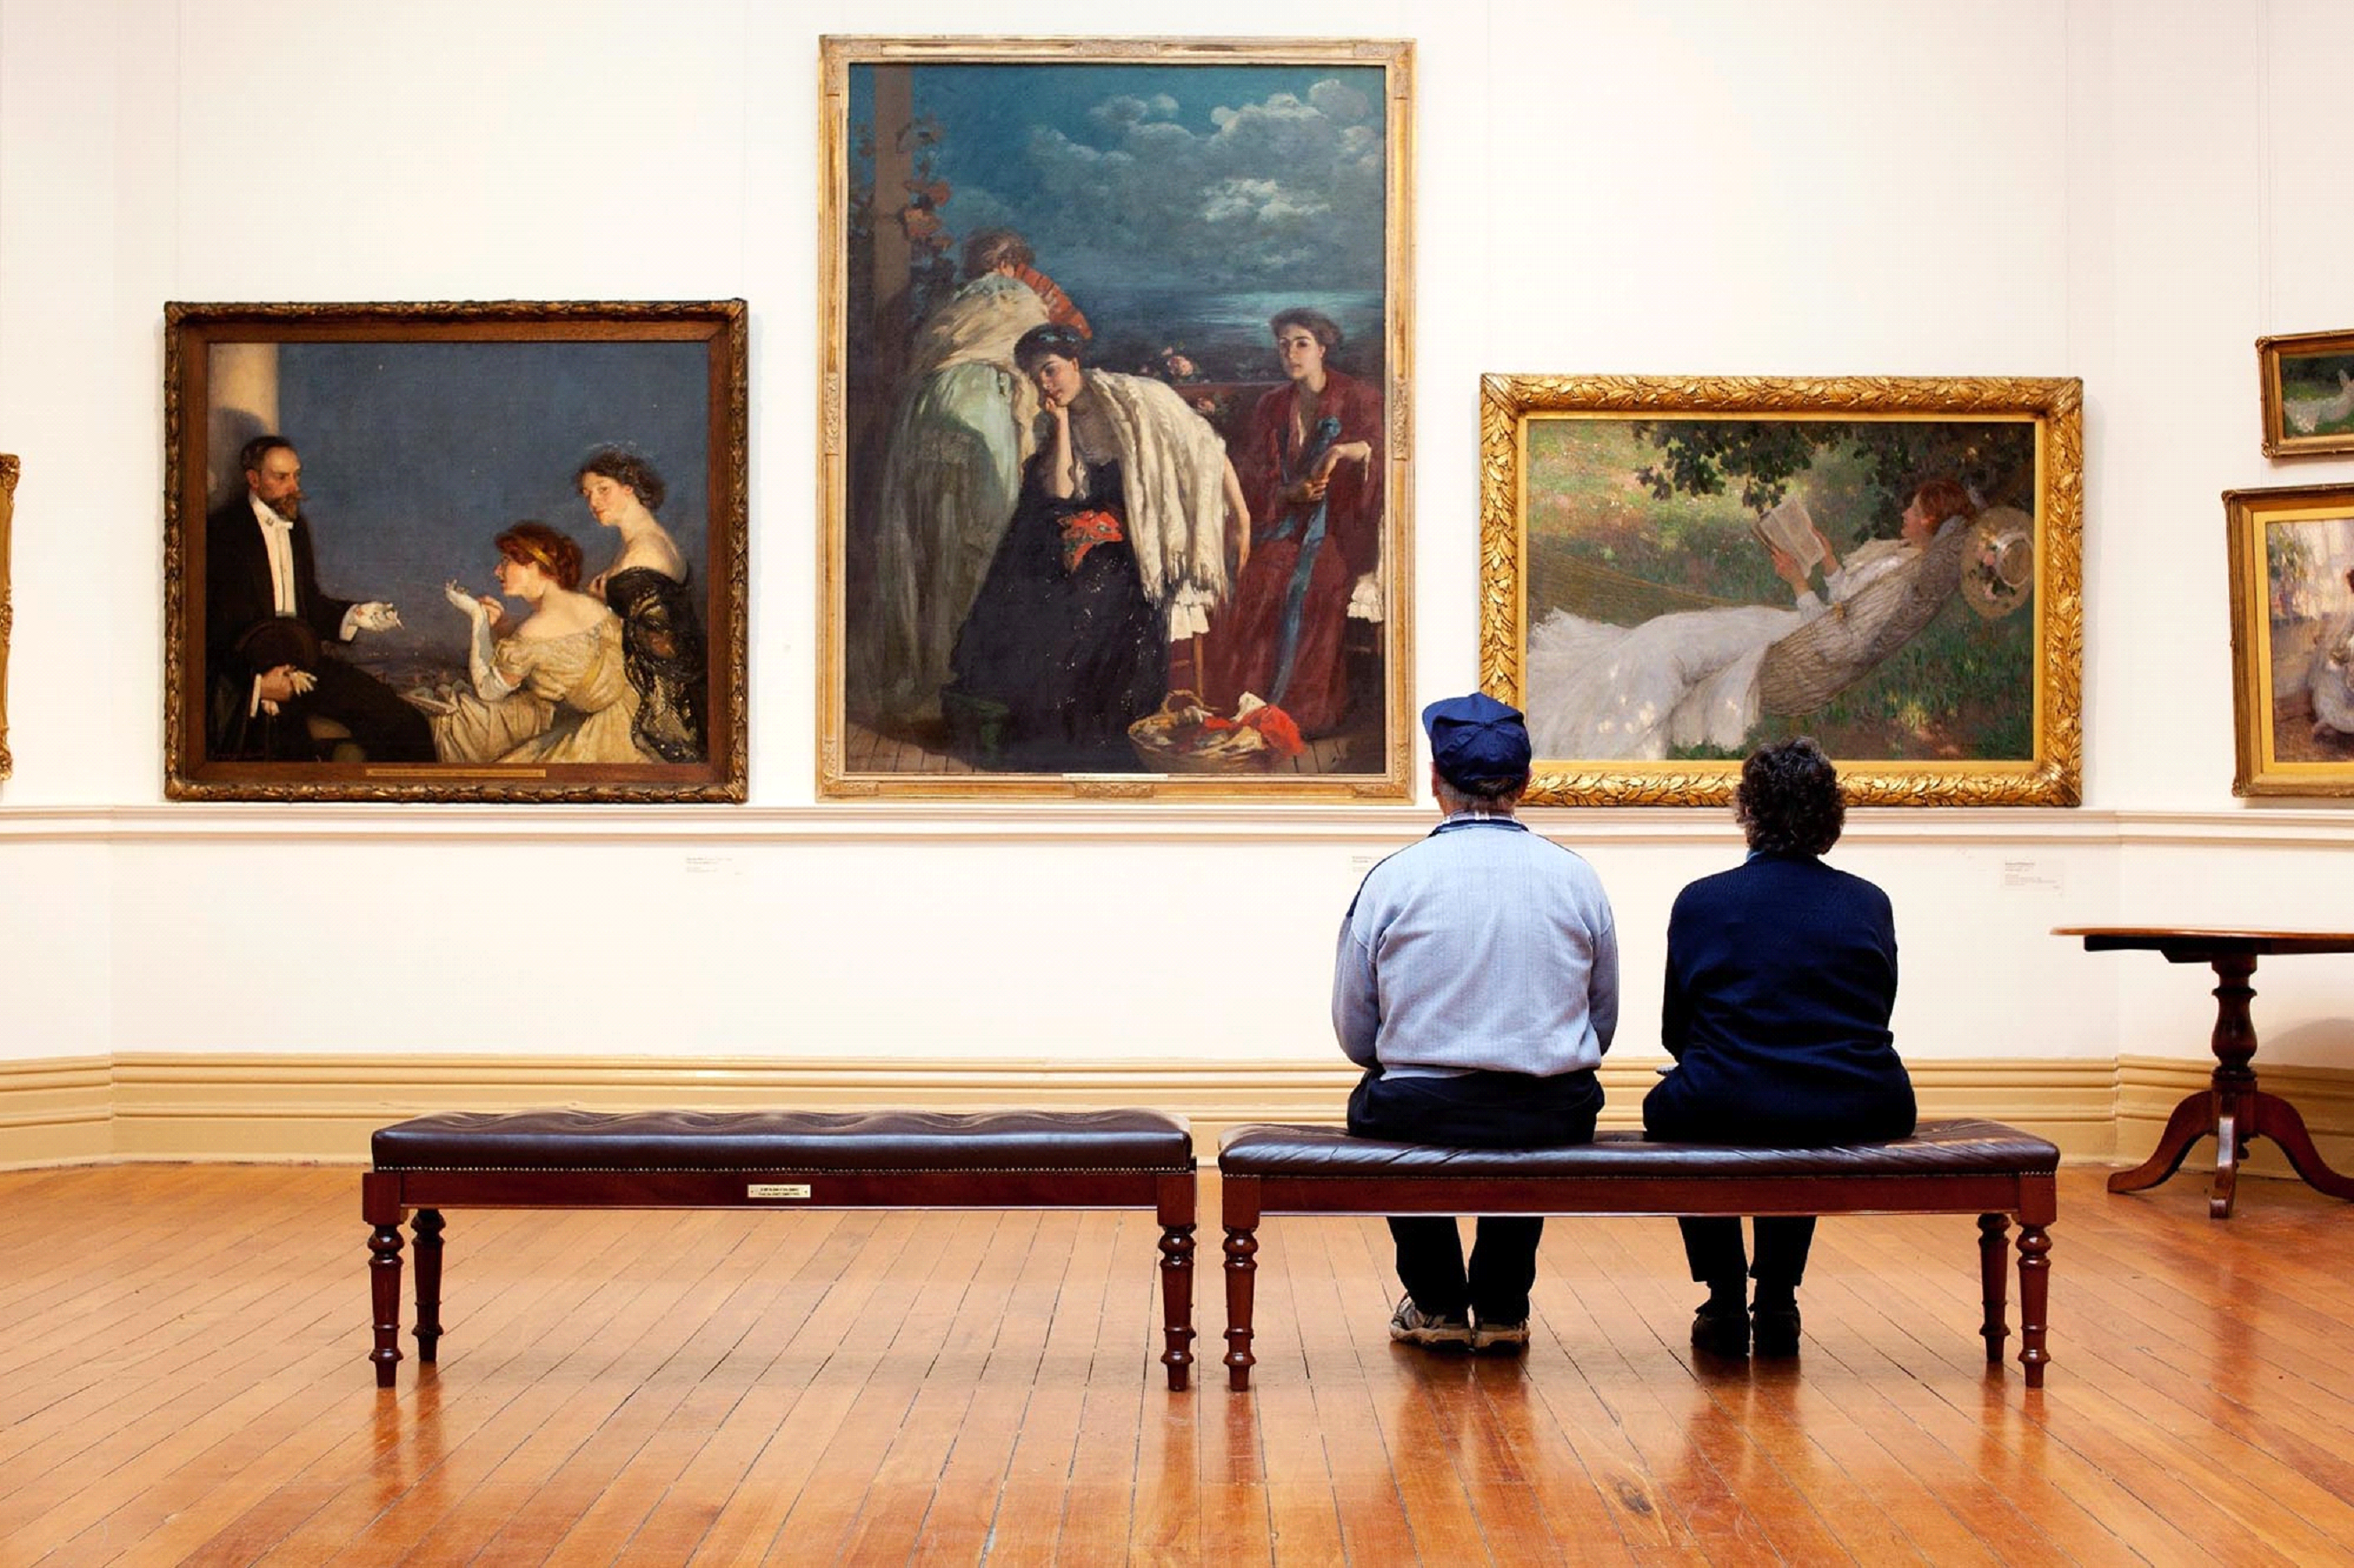 Перед какой картиной. Картина в музее. Люди в галерее. Люди смотрят на картину в музее. Человек смотрит на картину.